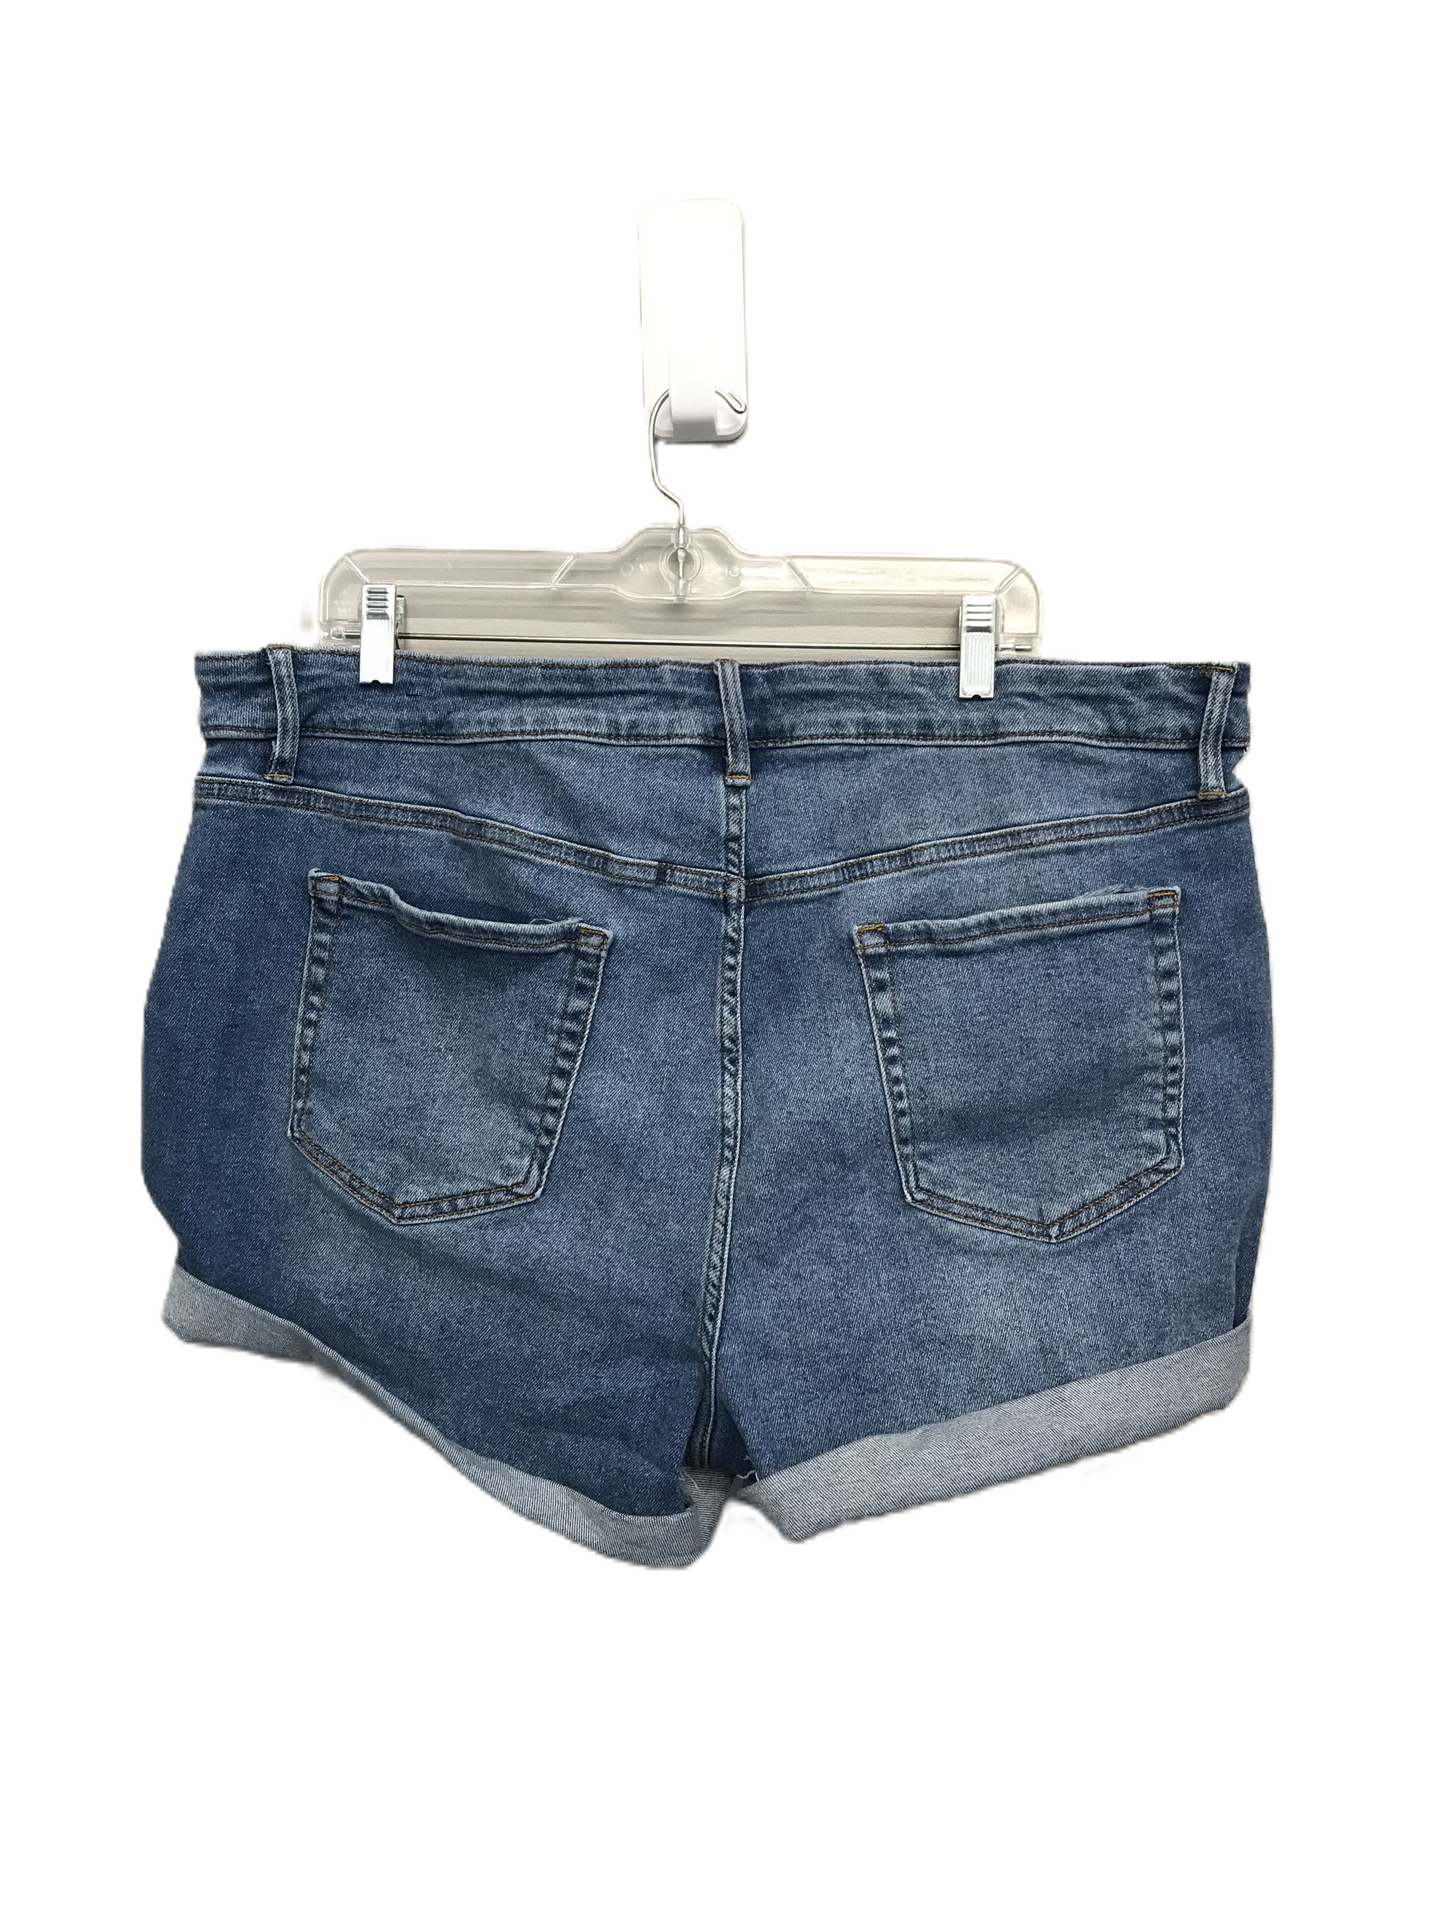 Blue Denim Shorts By Ava & Viv, Size: 22